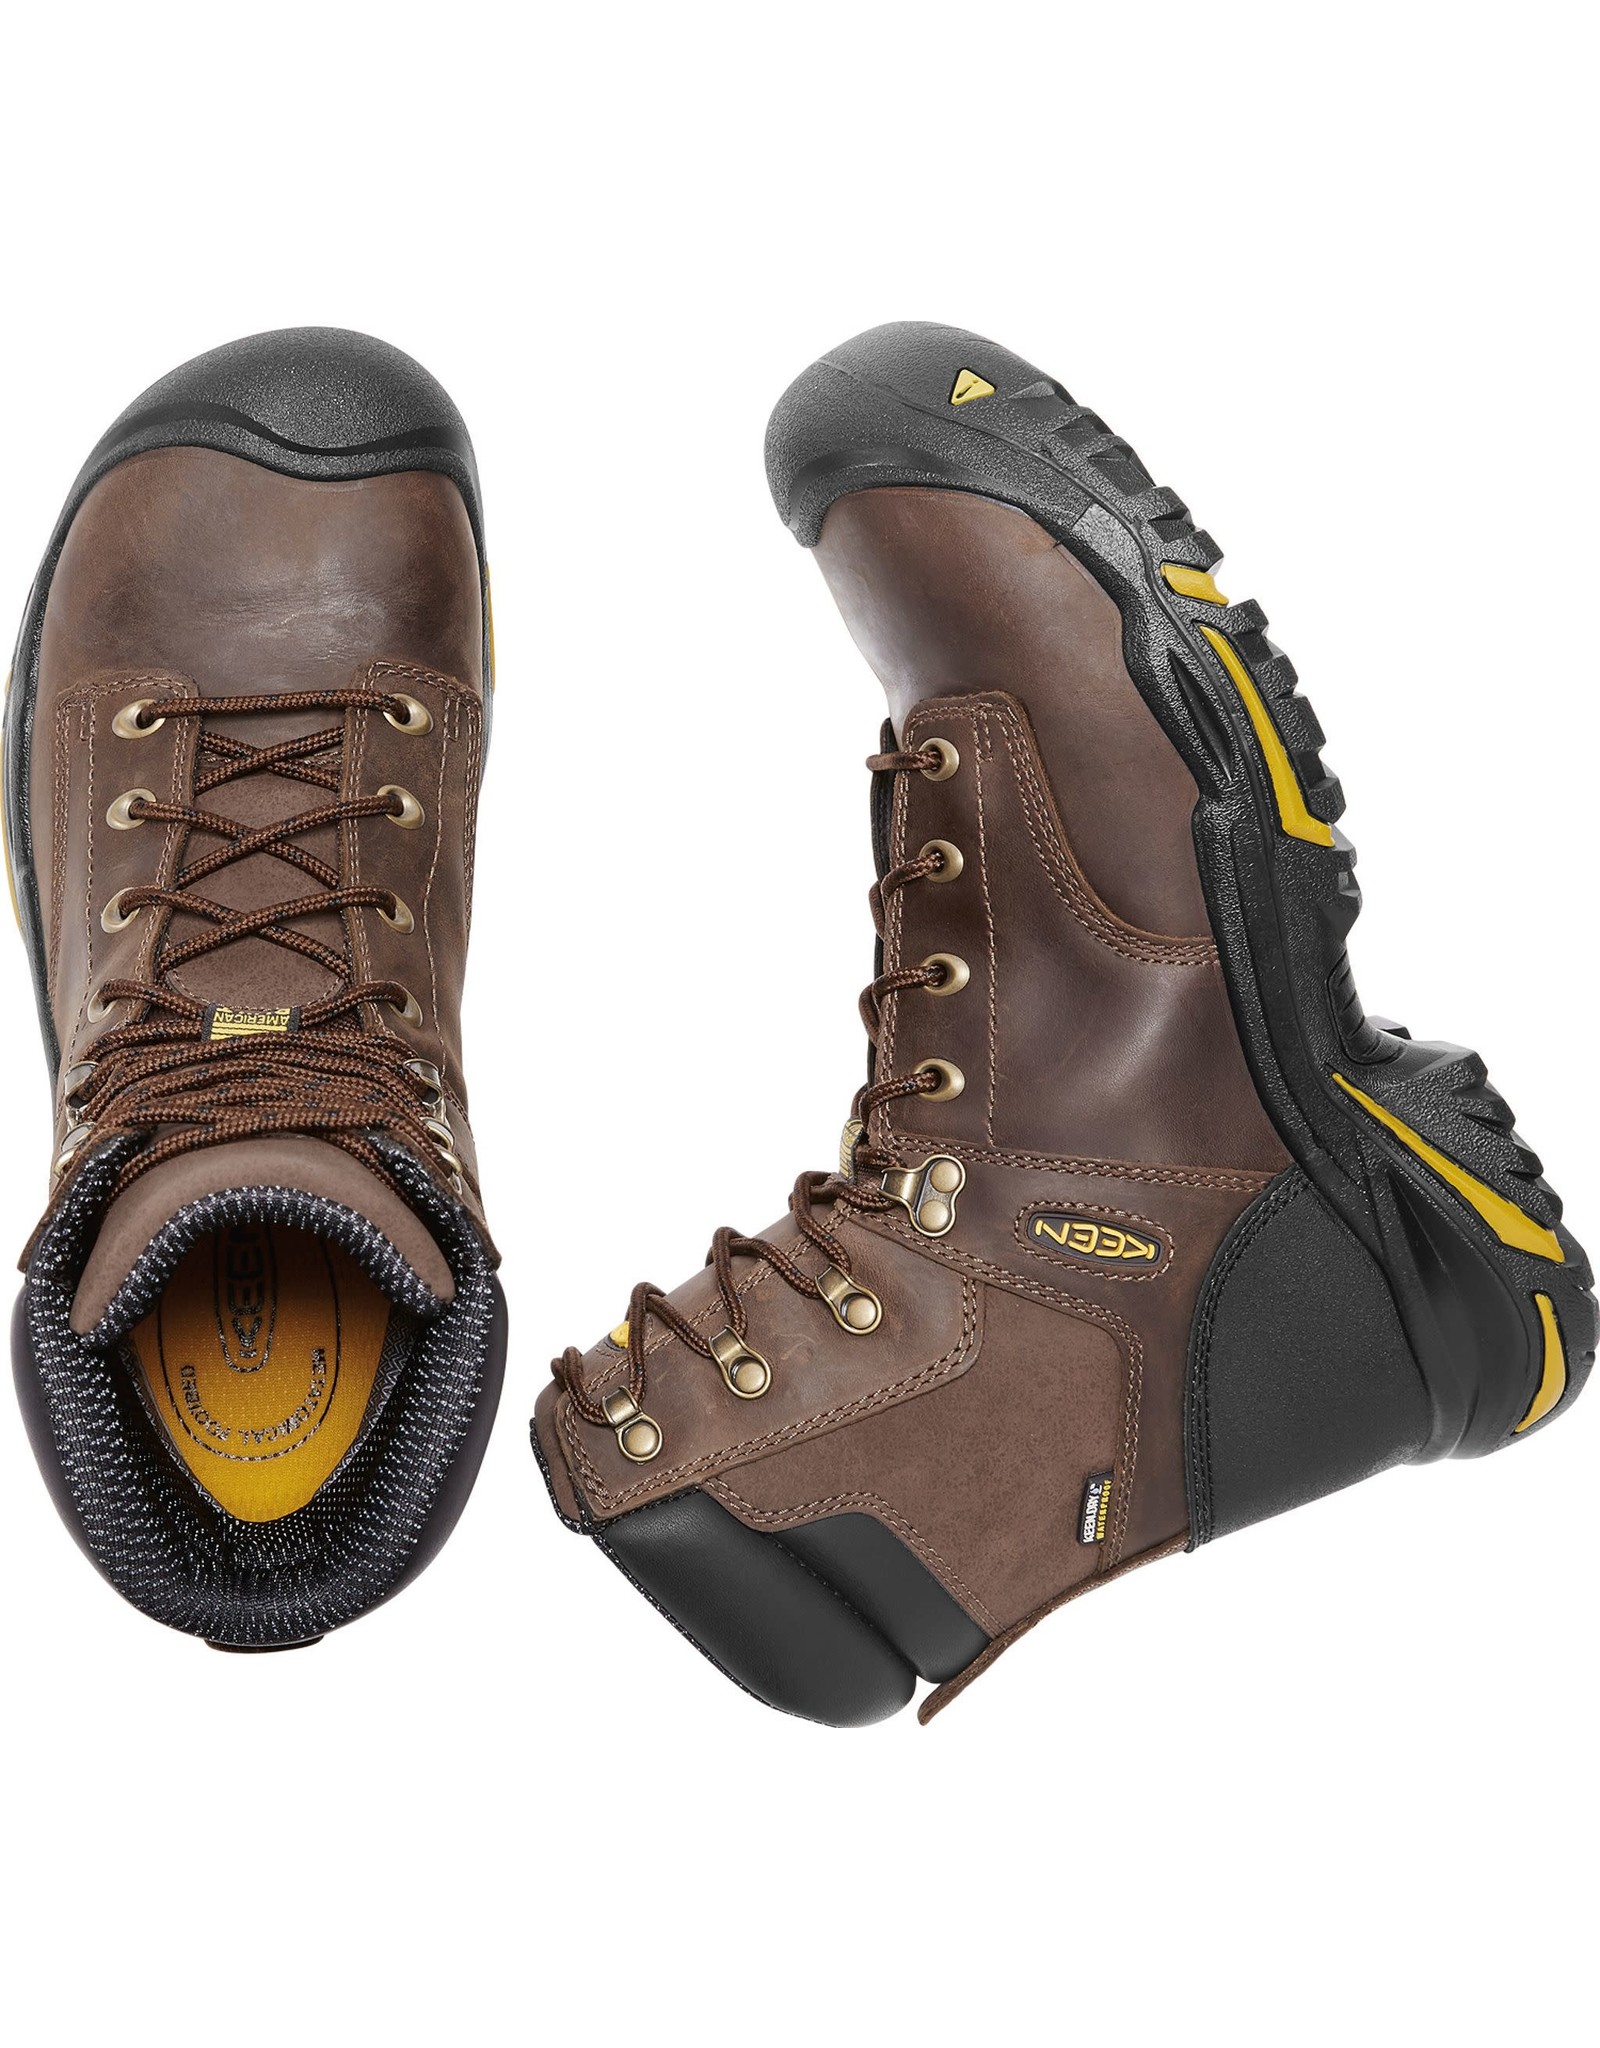 Keen Men's Mt. Vernon 8” 1013257 Steel Toe Work Boots